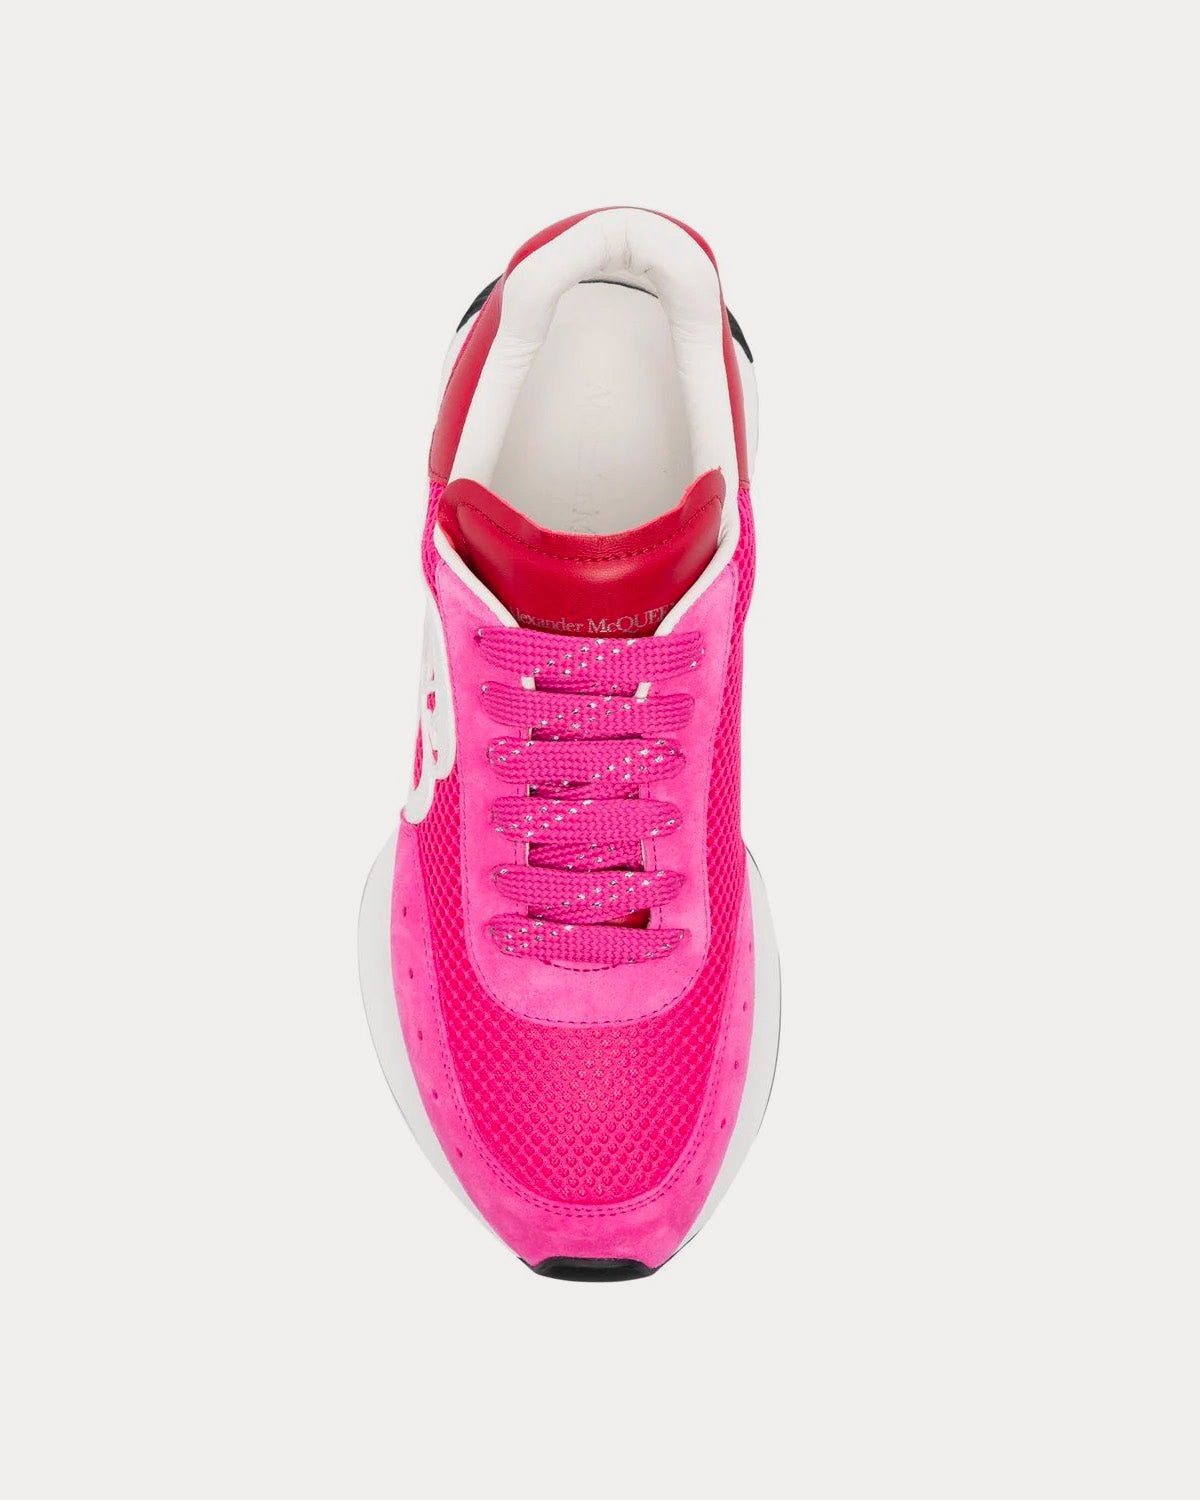 Alexander McQueen - Sprint Runner Pink / White Low Top Sneakers